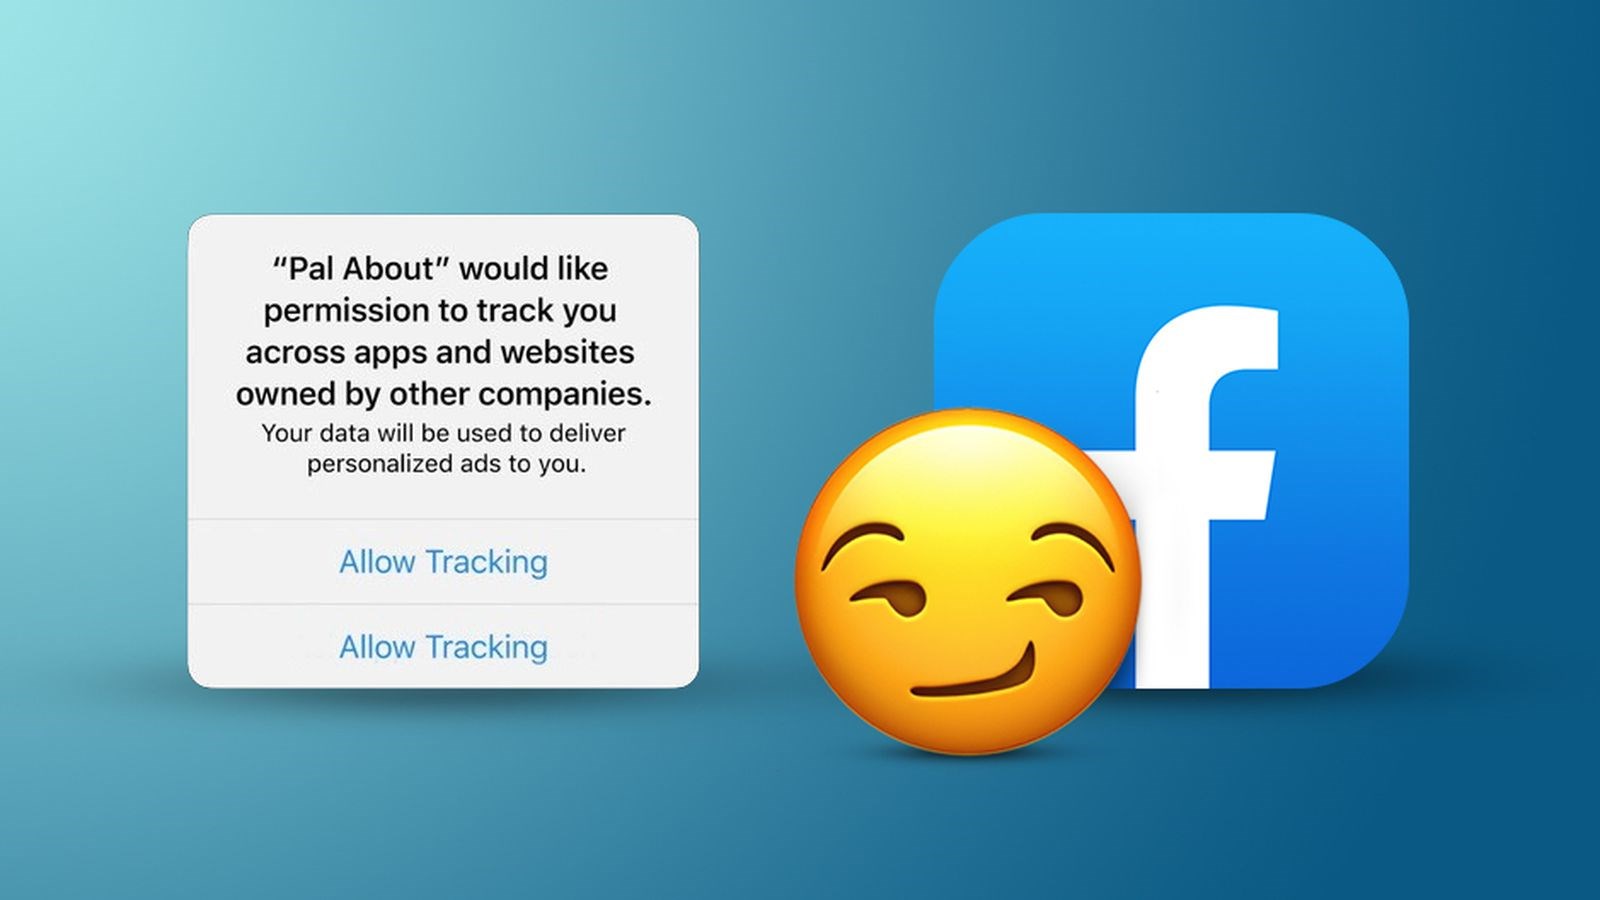 Apple’dan geri vites: iOS 14 ile gelecek izleme önleme özelliği gecikecek